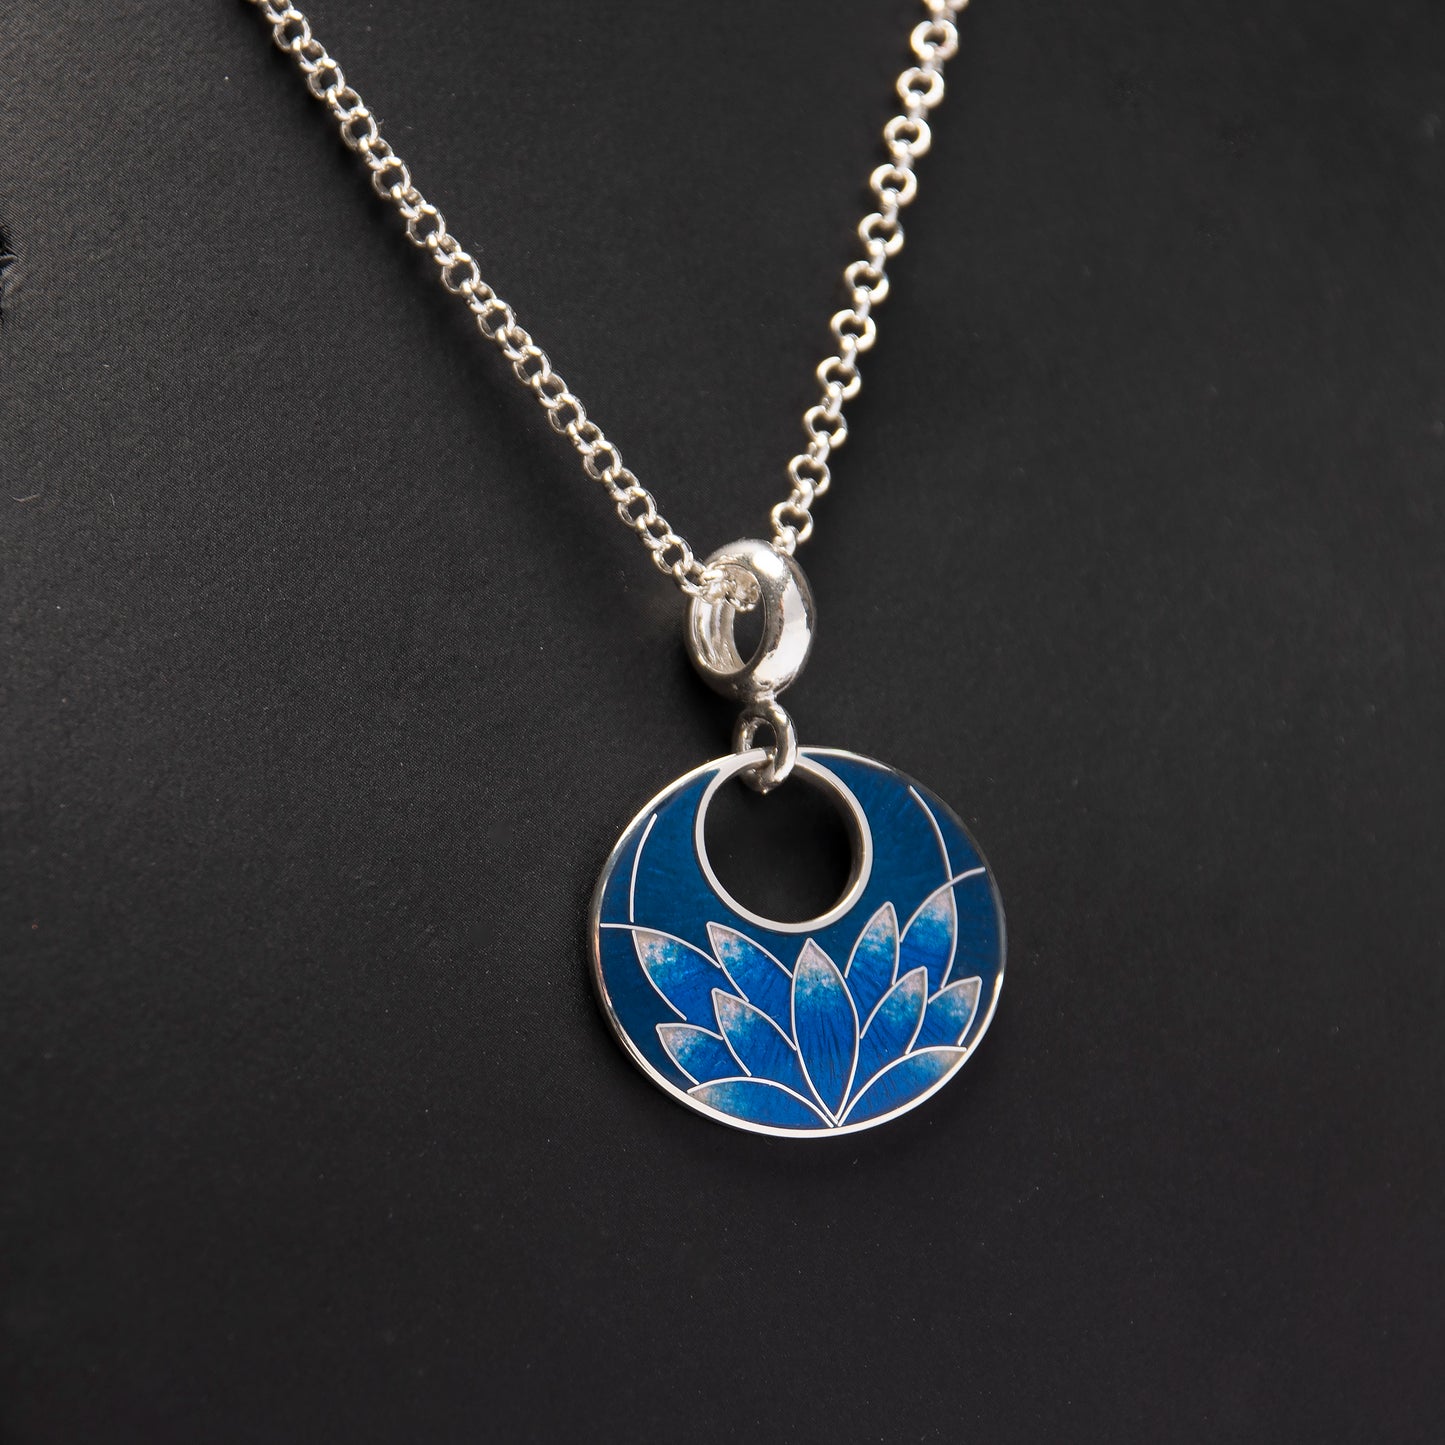 Cloisonné Enamel Pendant-Necklace "Blue Lotus"